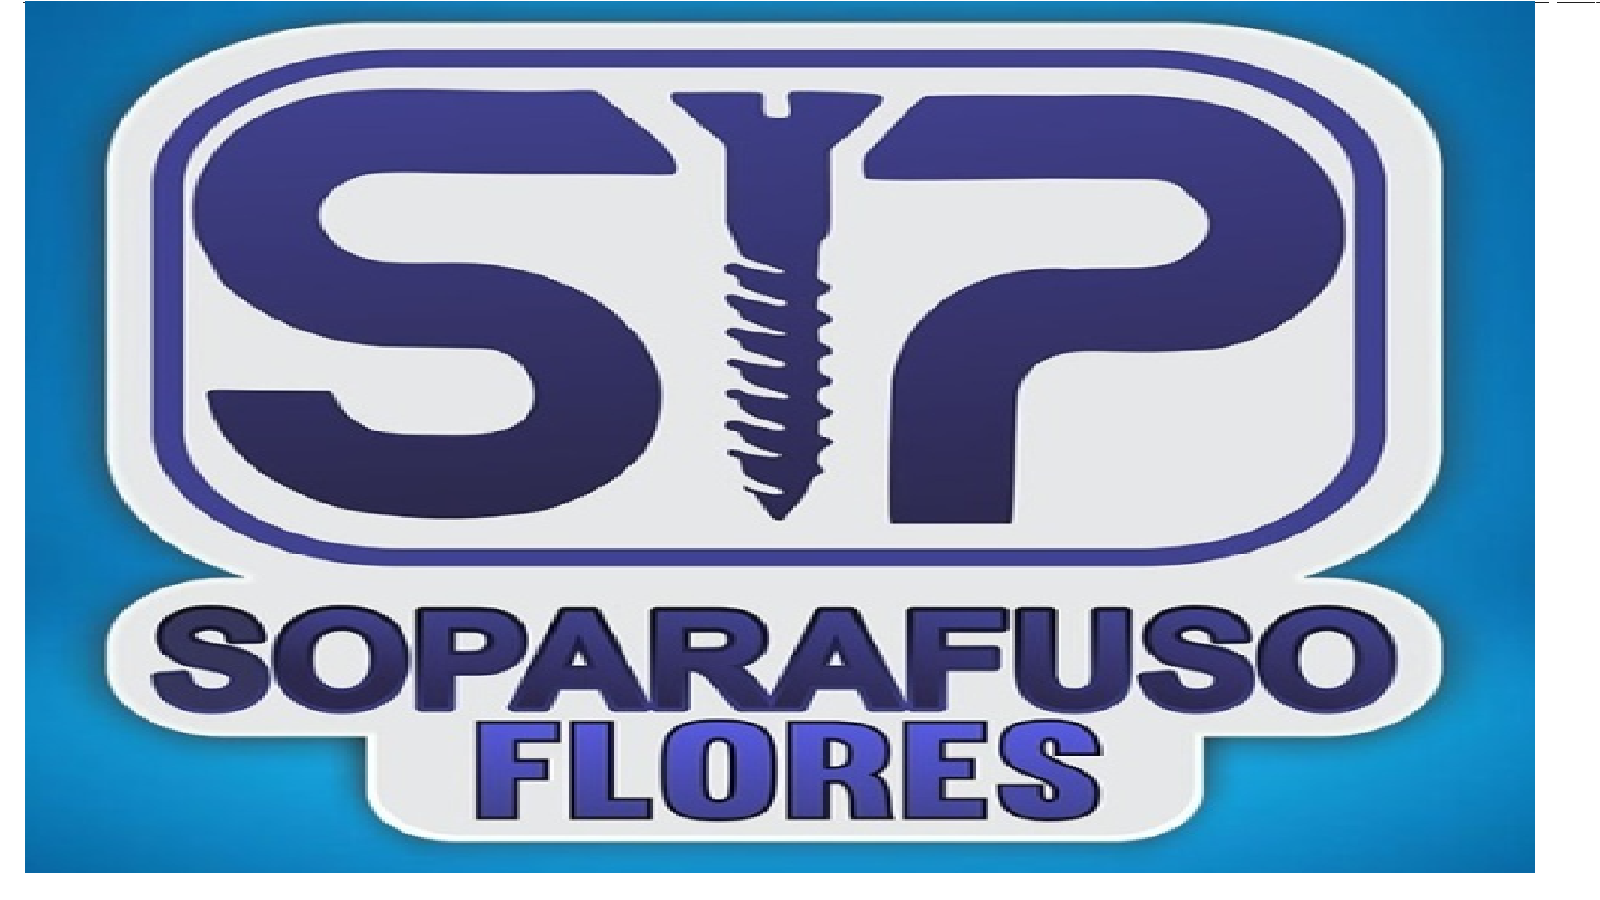 SOPARAFUSO FLORES